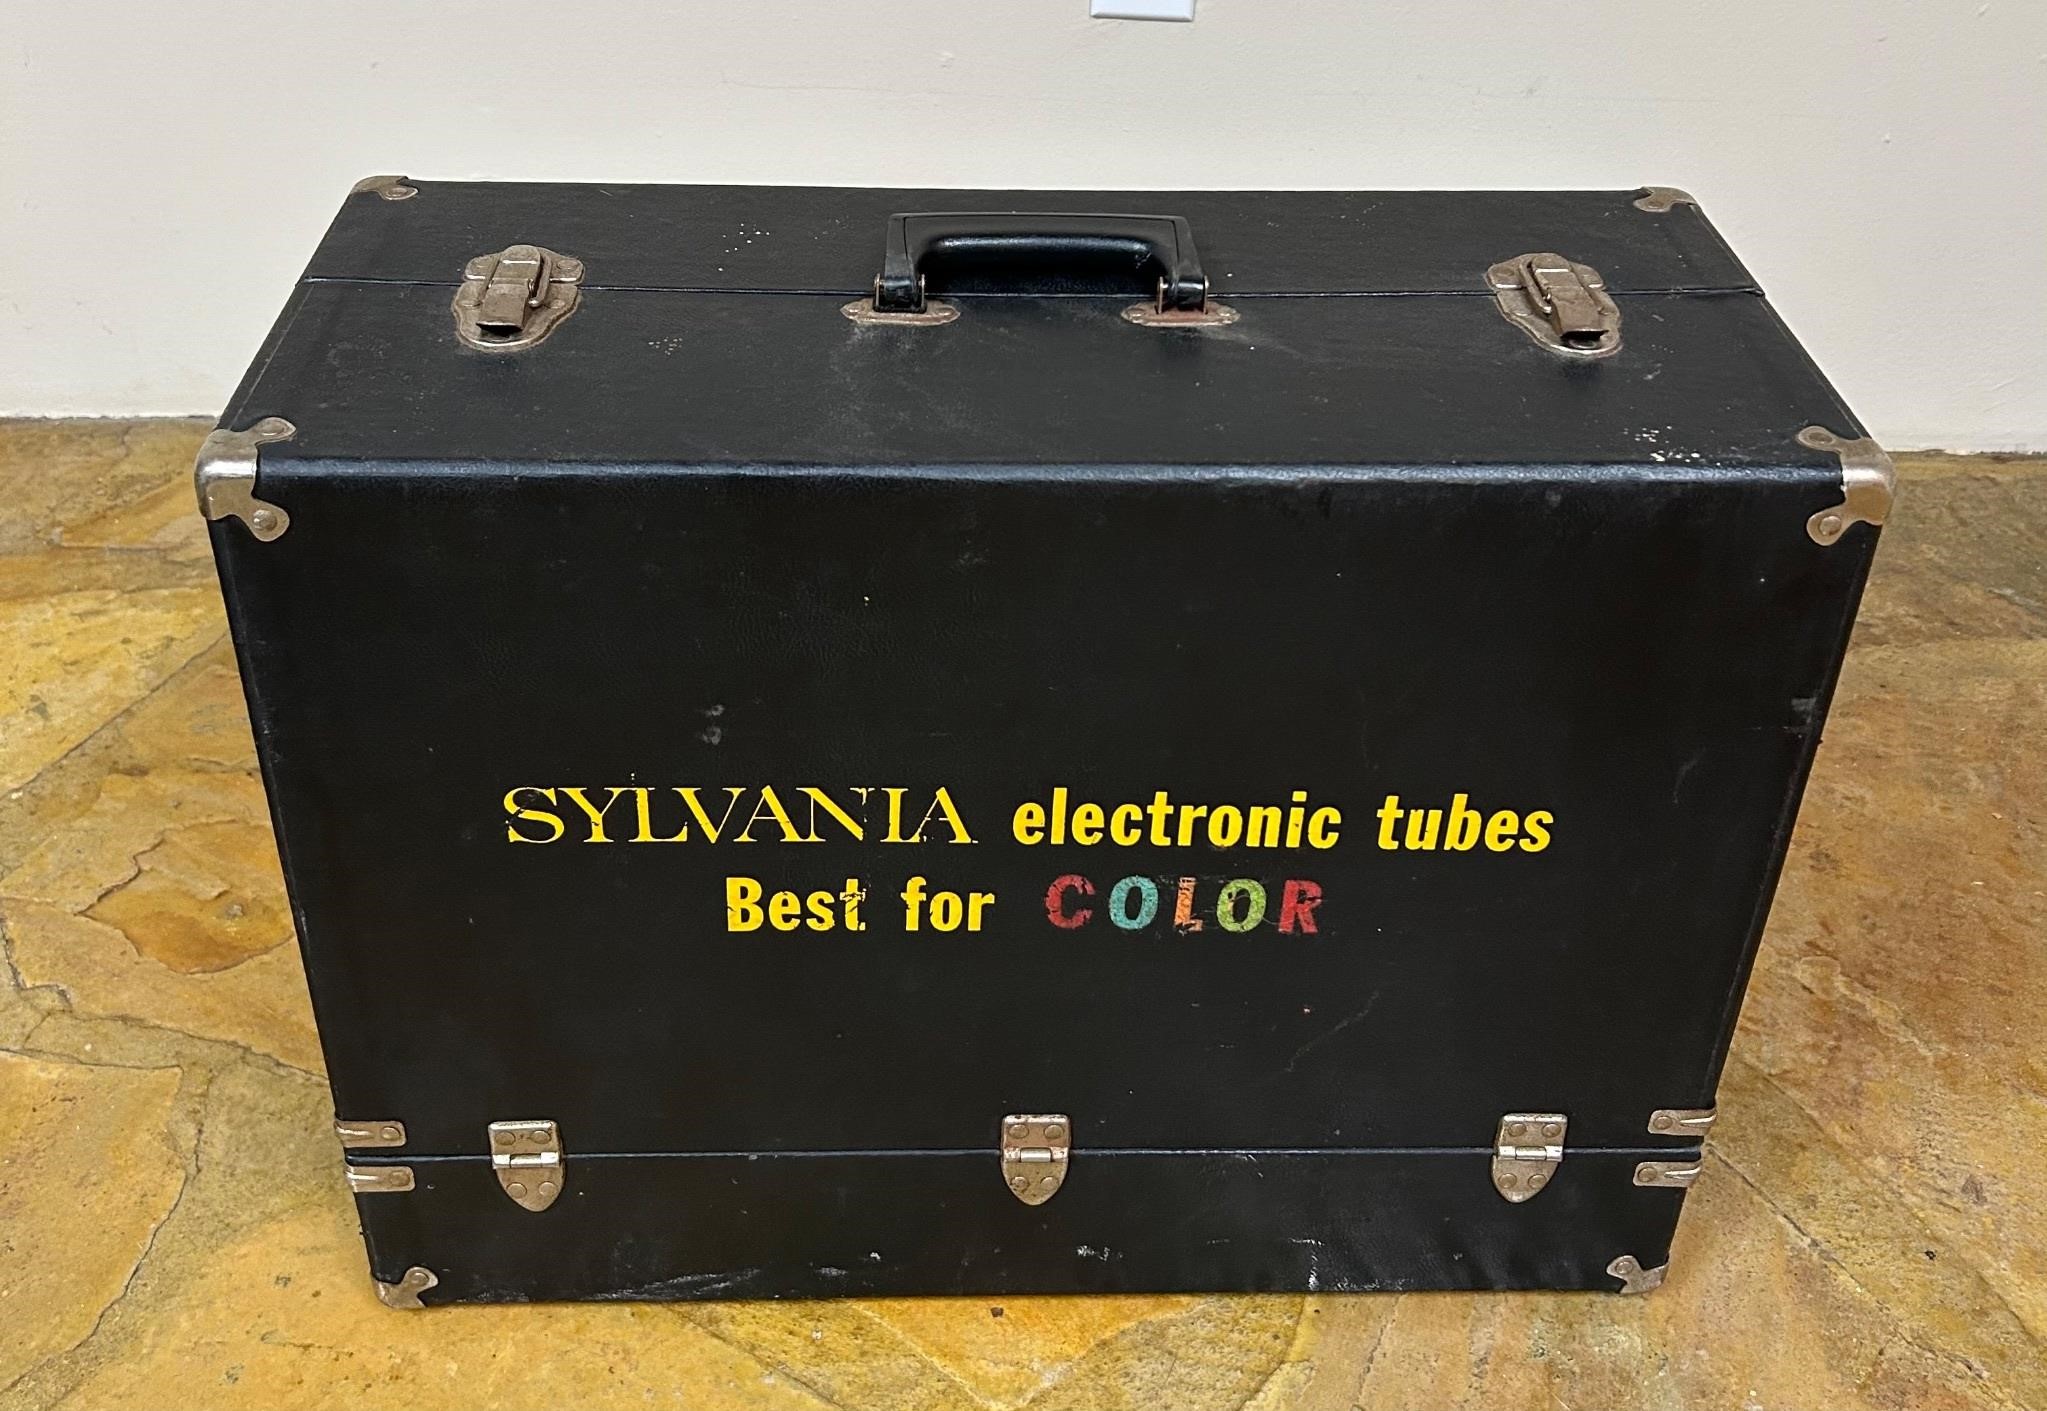 Vintage Case of Sylvania Electronic Tubes